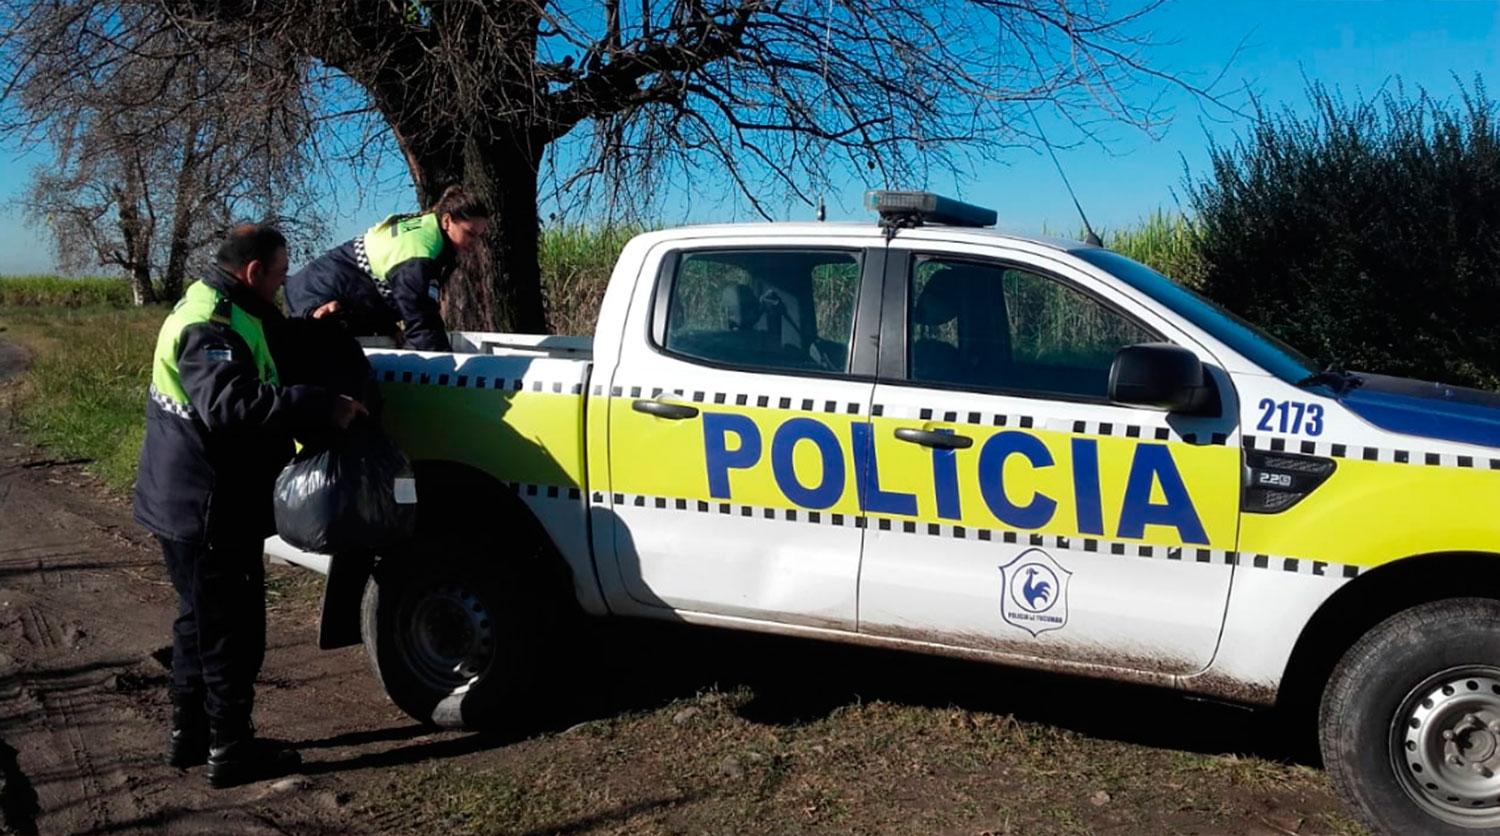 Policías solidarios donaron ropa y útiles a una escuela de La Rinconada